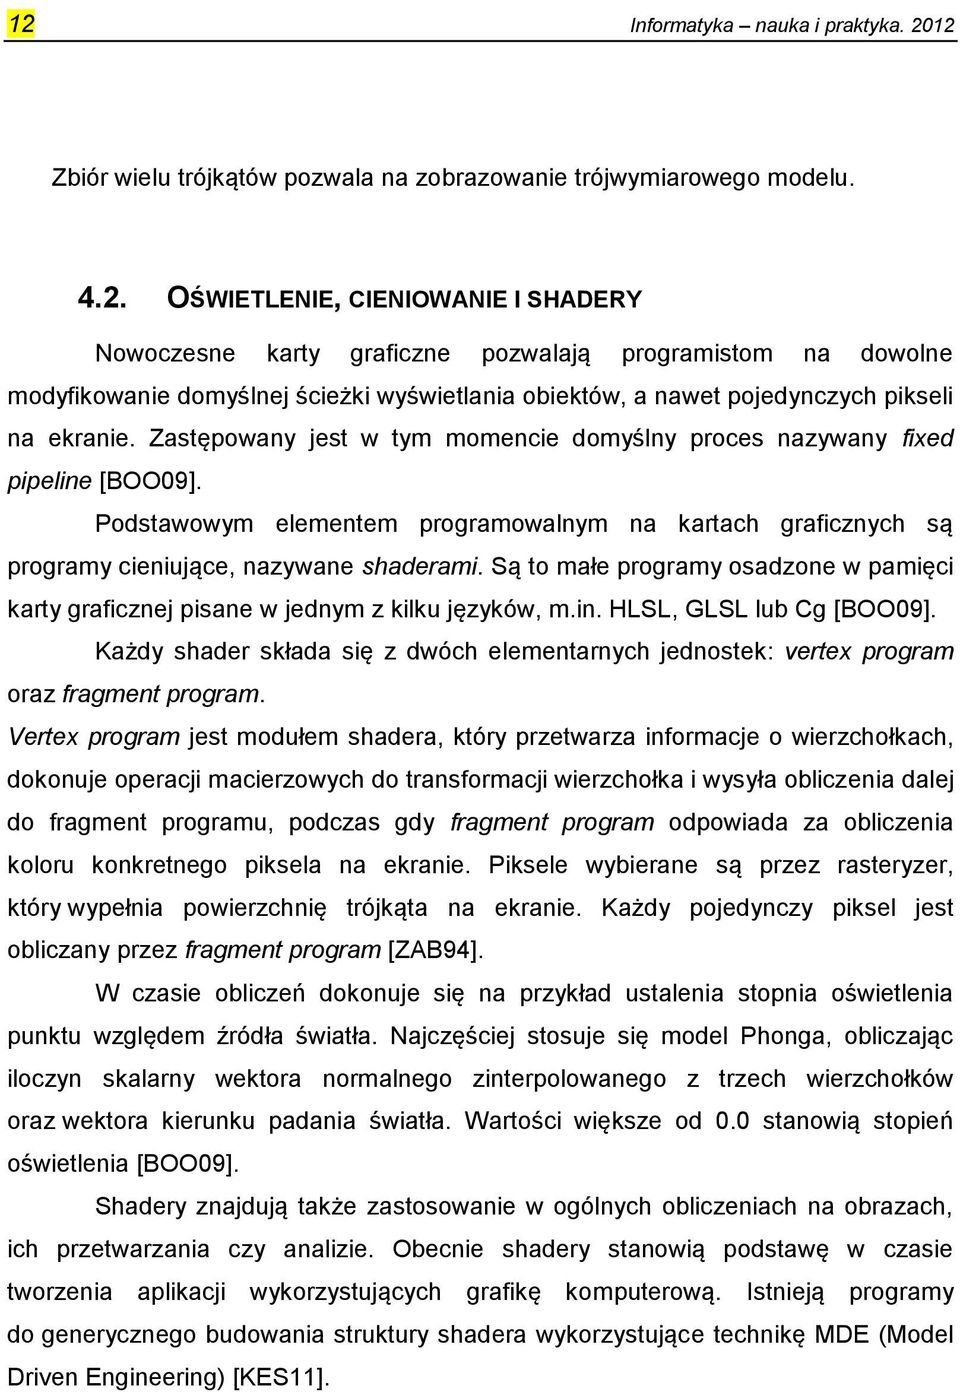 Są to małe programy osadzone w pamięci karty graficznej pisane w jednym z kilku języków, m.in. HLSL, GLSL lub Cg [BOO09].